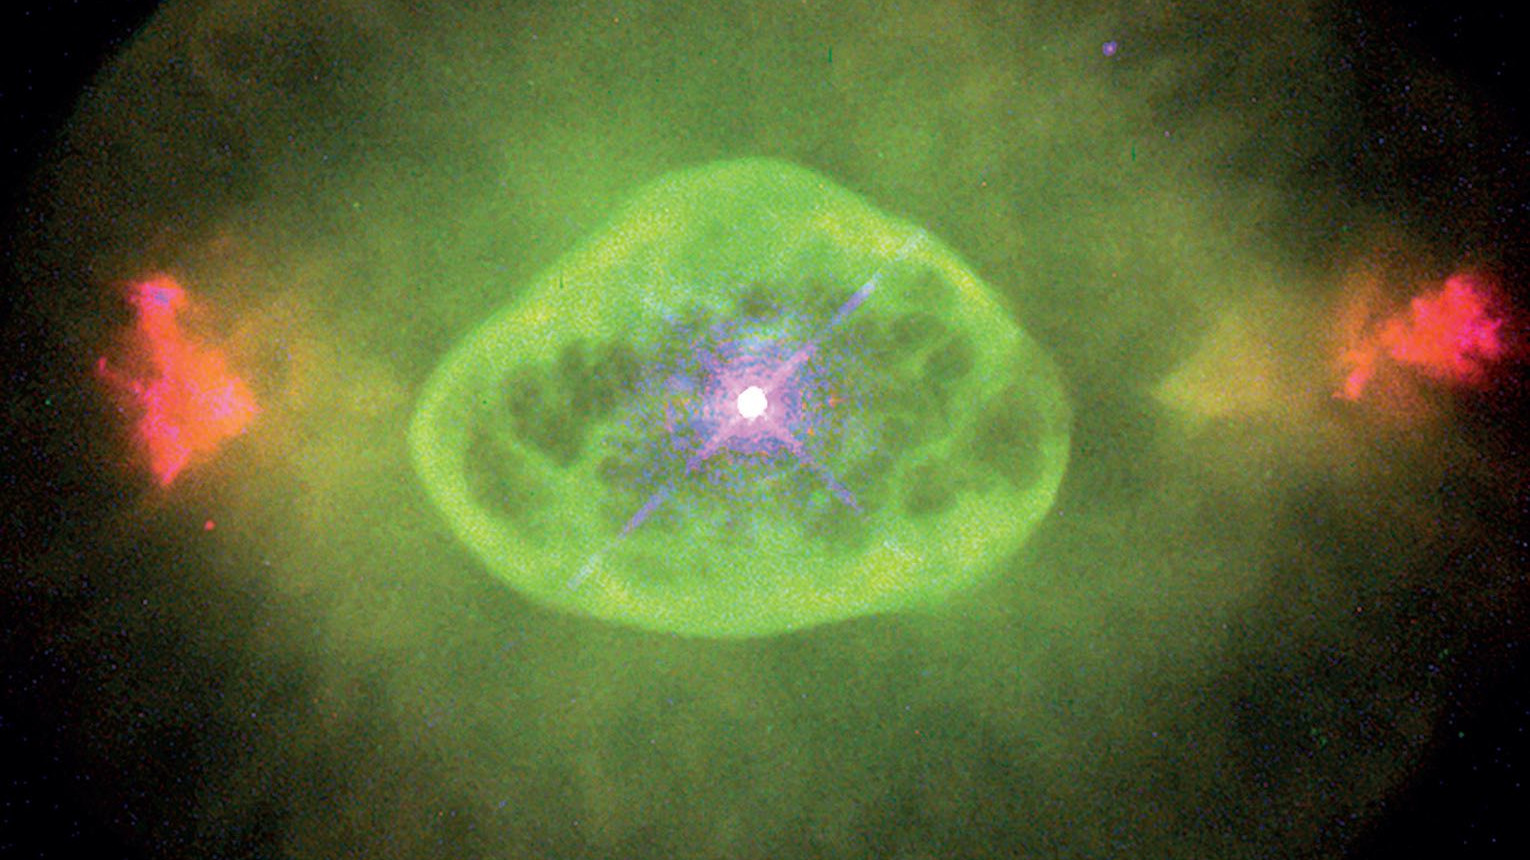 The blinking nebula